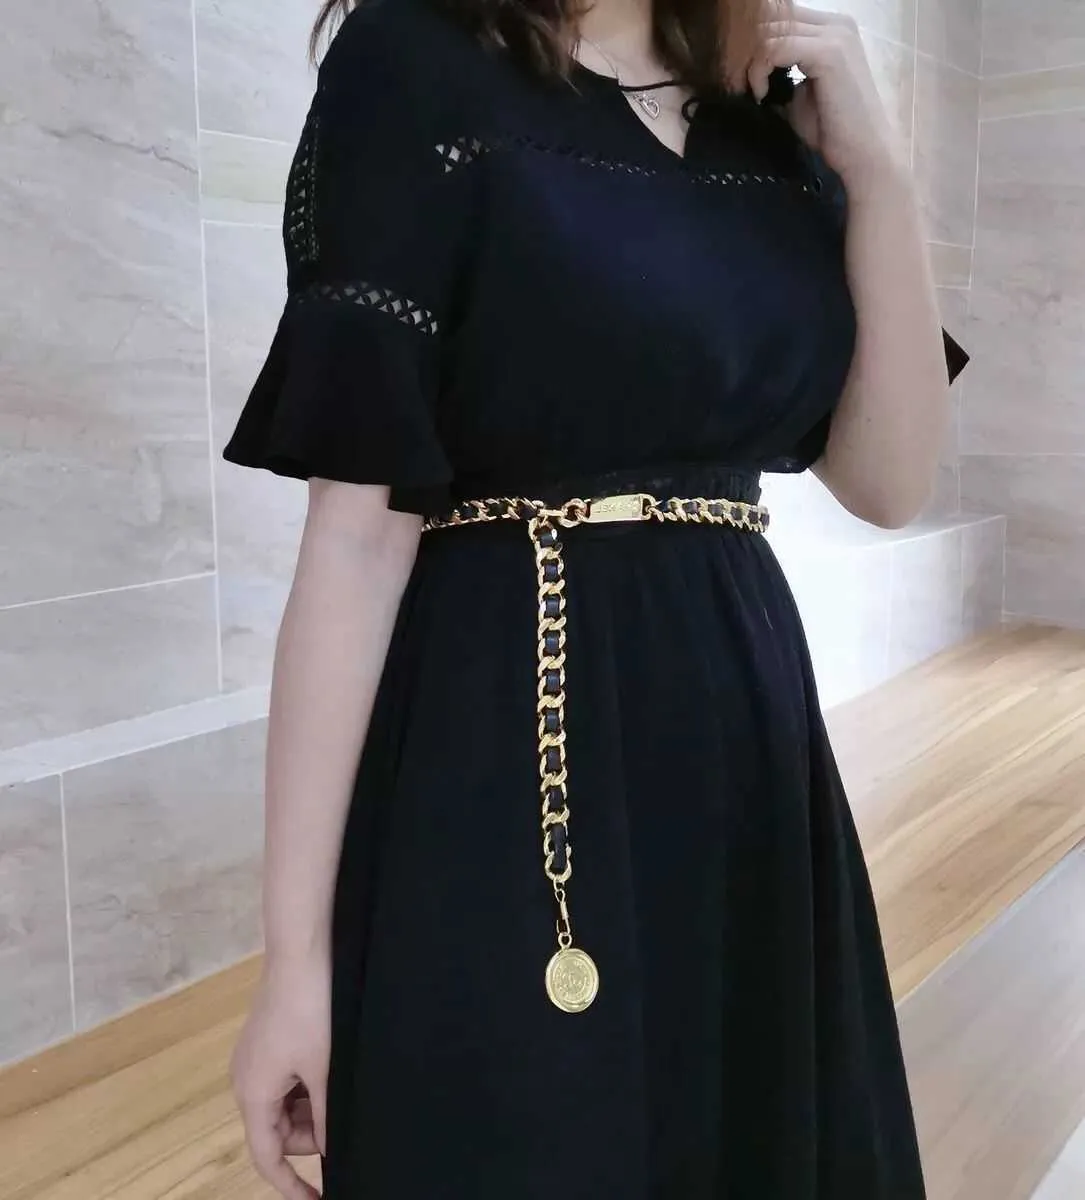 Ortaçağ Metal Bel Zinciri Kot Elbise Aksesuarları Siyah Altın Zincir Eski Bayan Deri Kemer Kolye Zinciri Tasarımcı Kemerleri Q0726